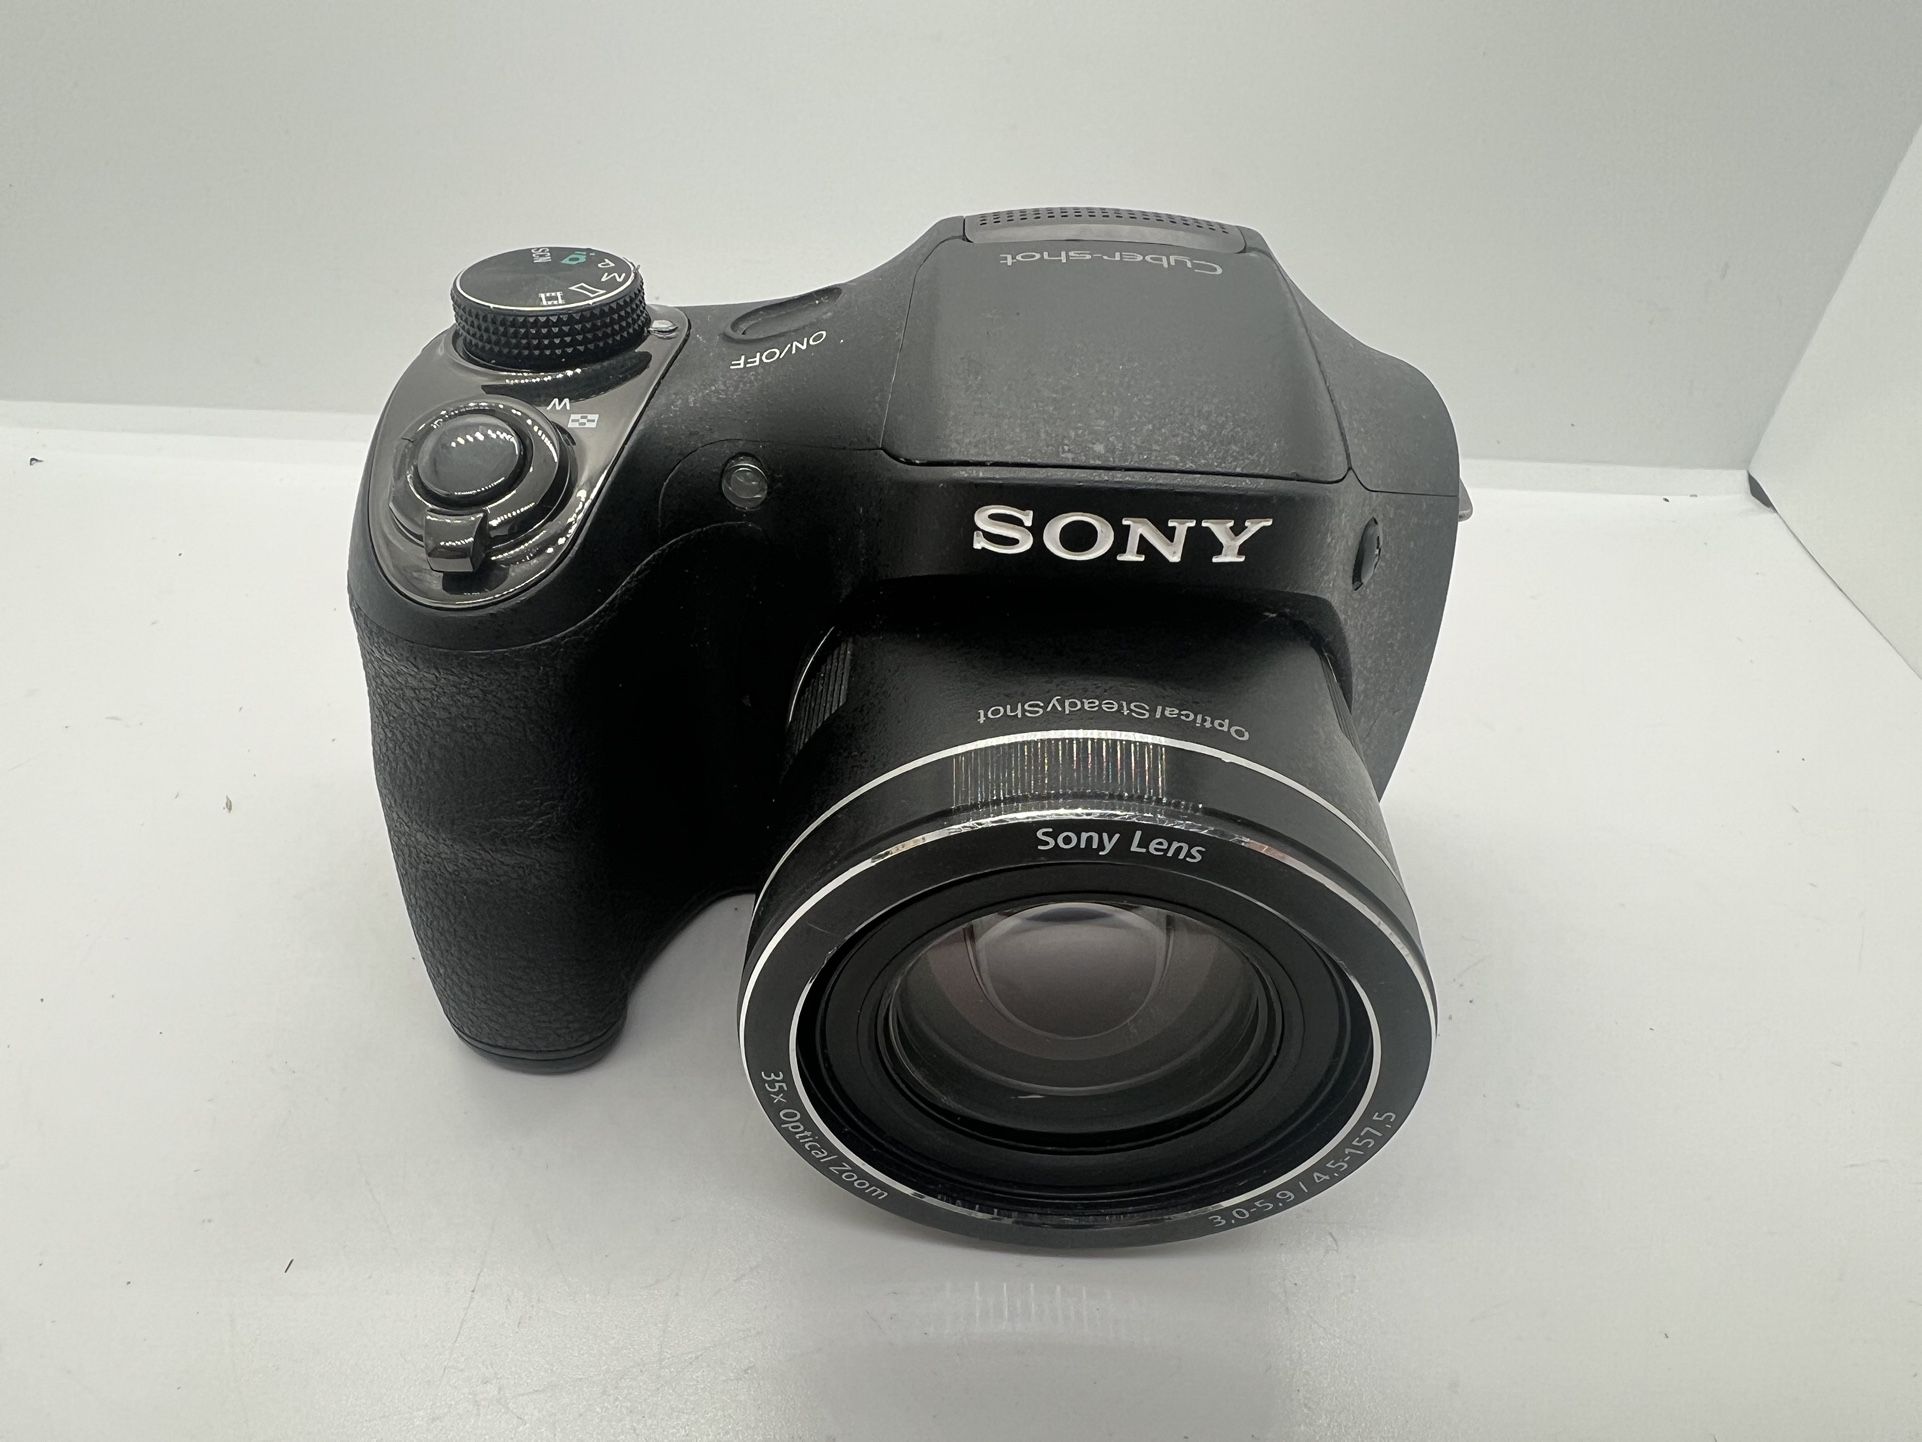 Sony DSC-H300 20.1-Megapixel Digital Camera in Black